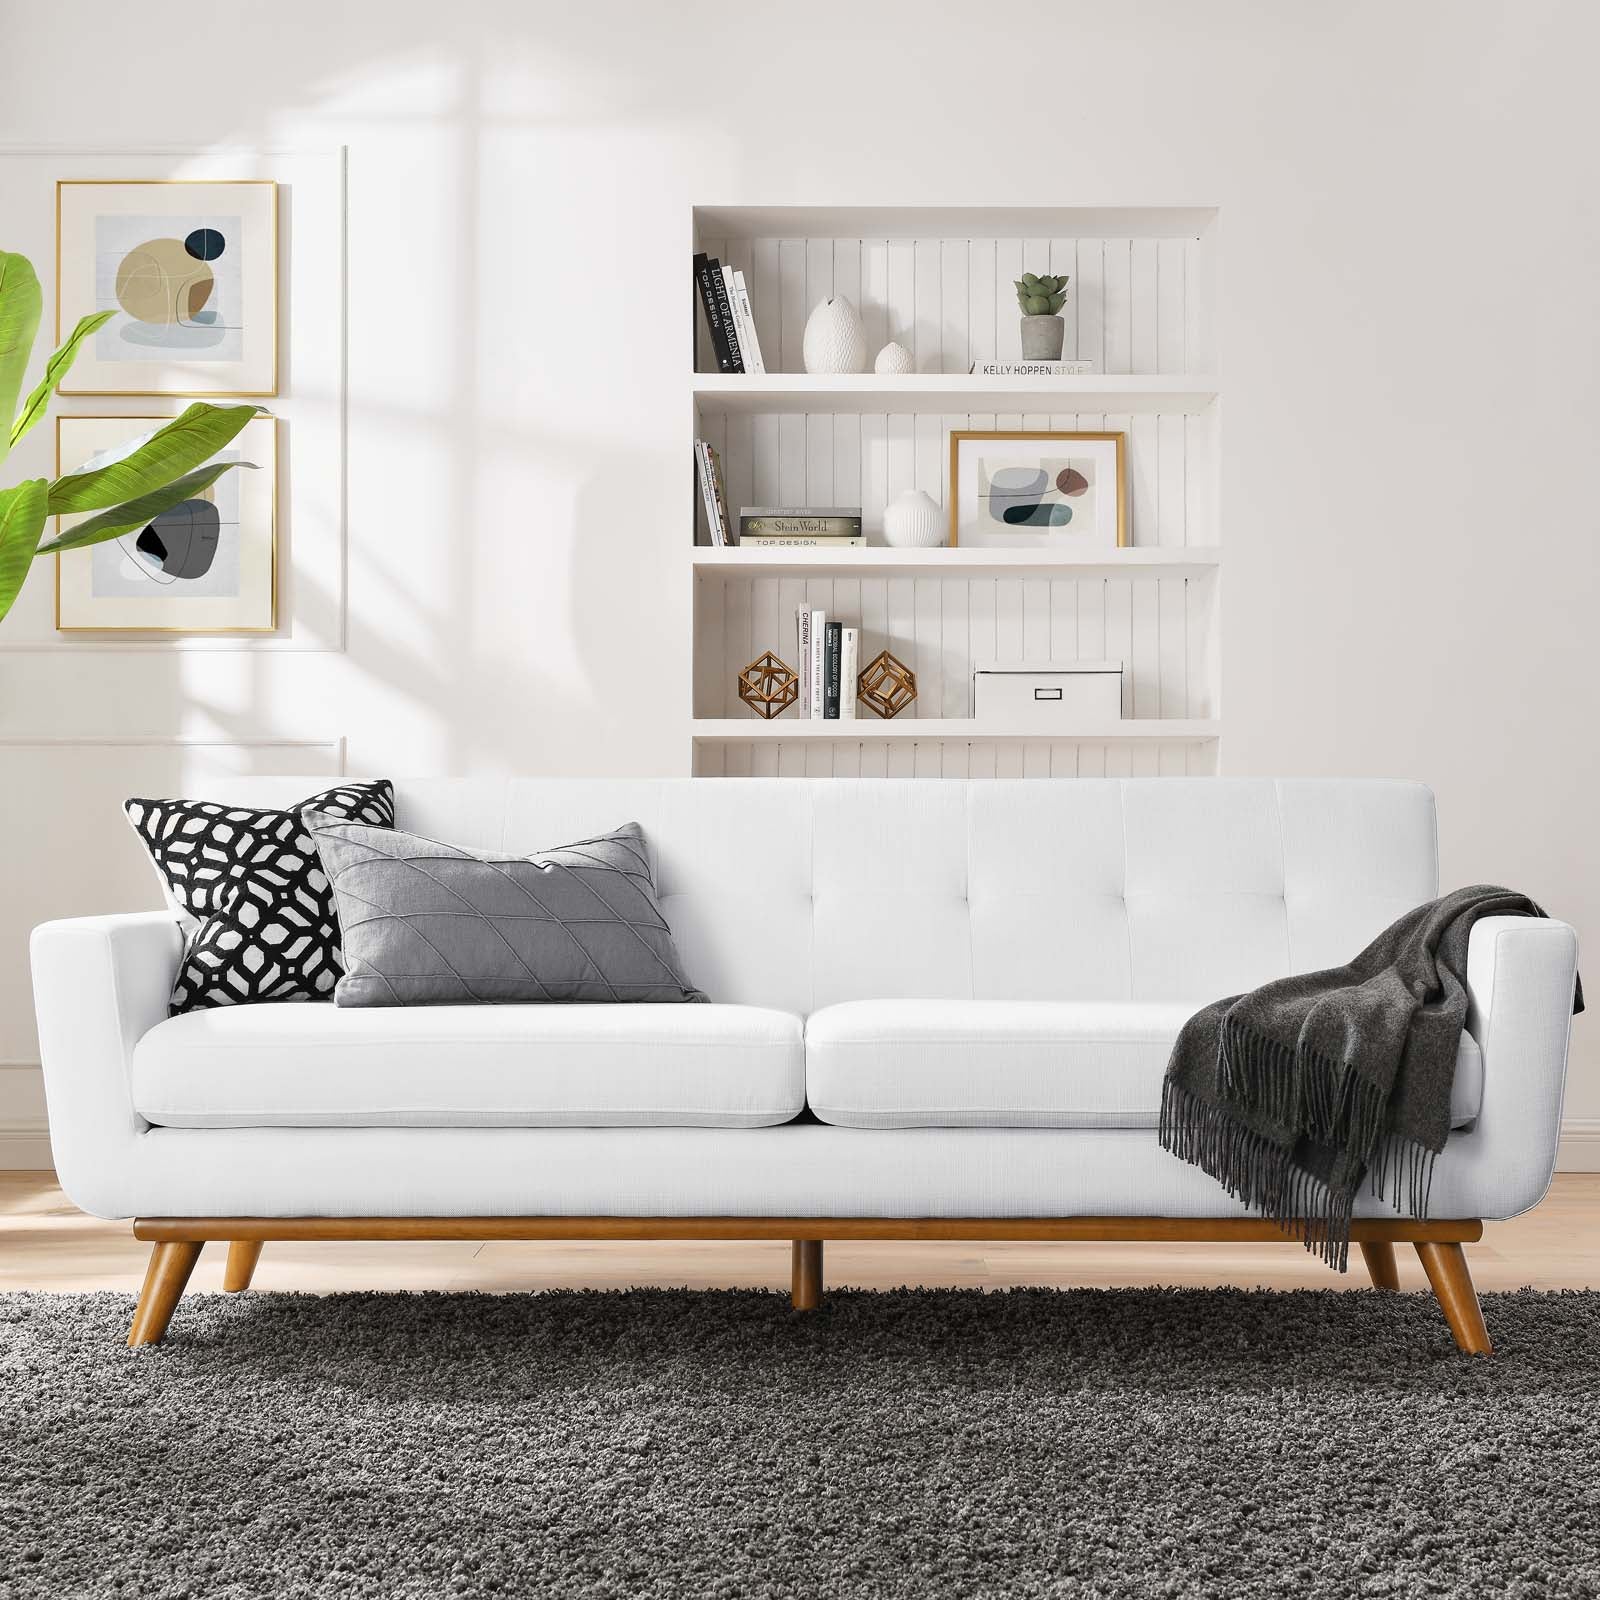 Engage Upholstered Fabric Sofa